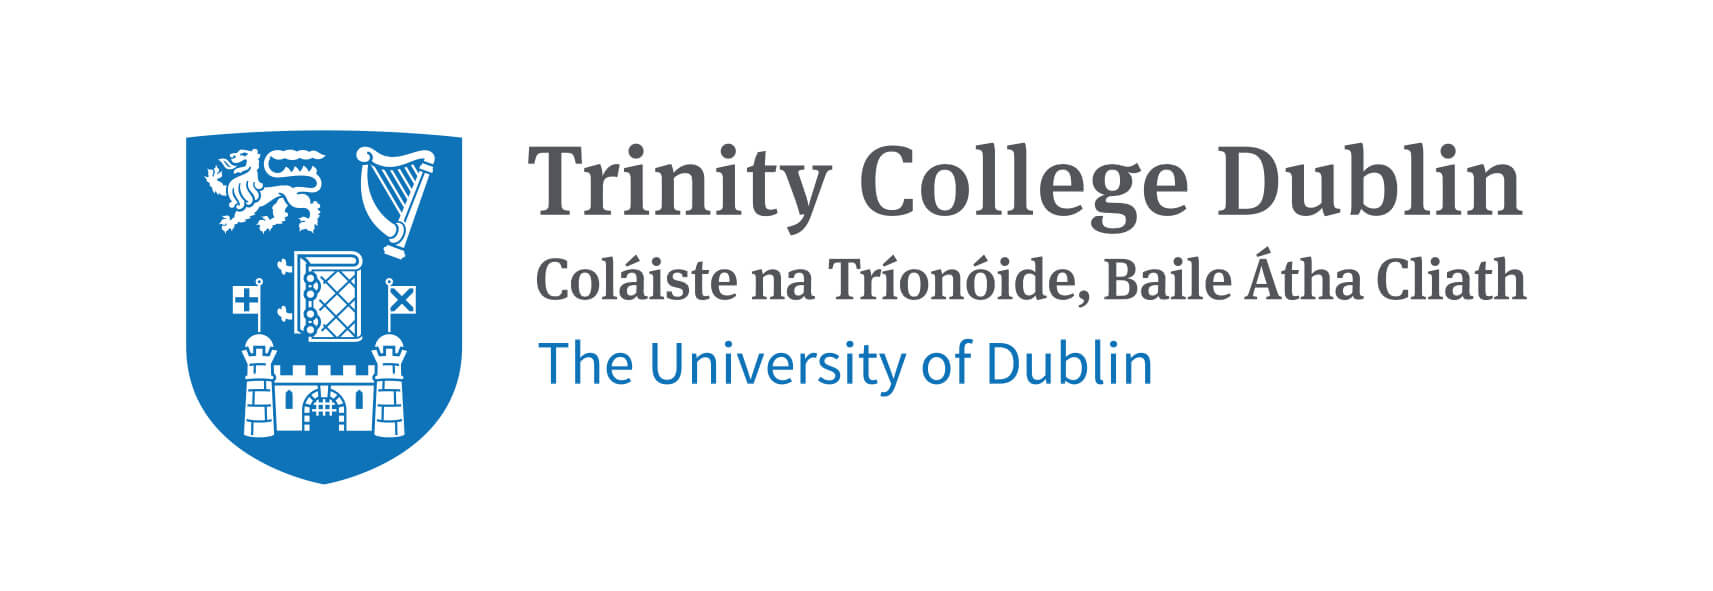 Ingenieur-Diplom von der ältesten Universität in Irland